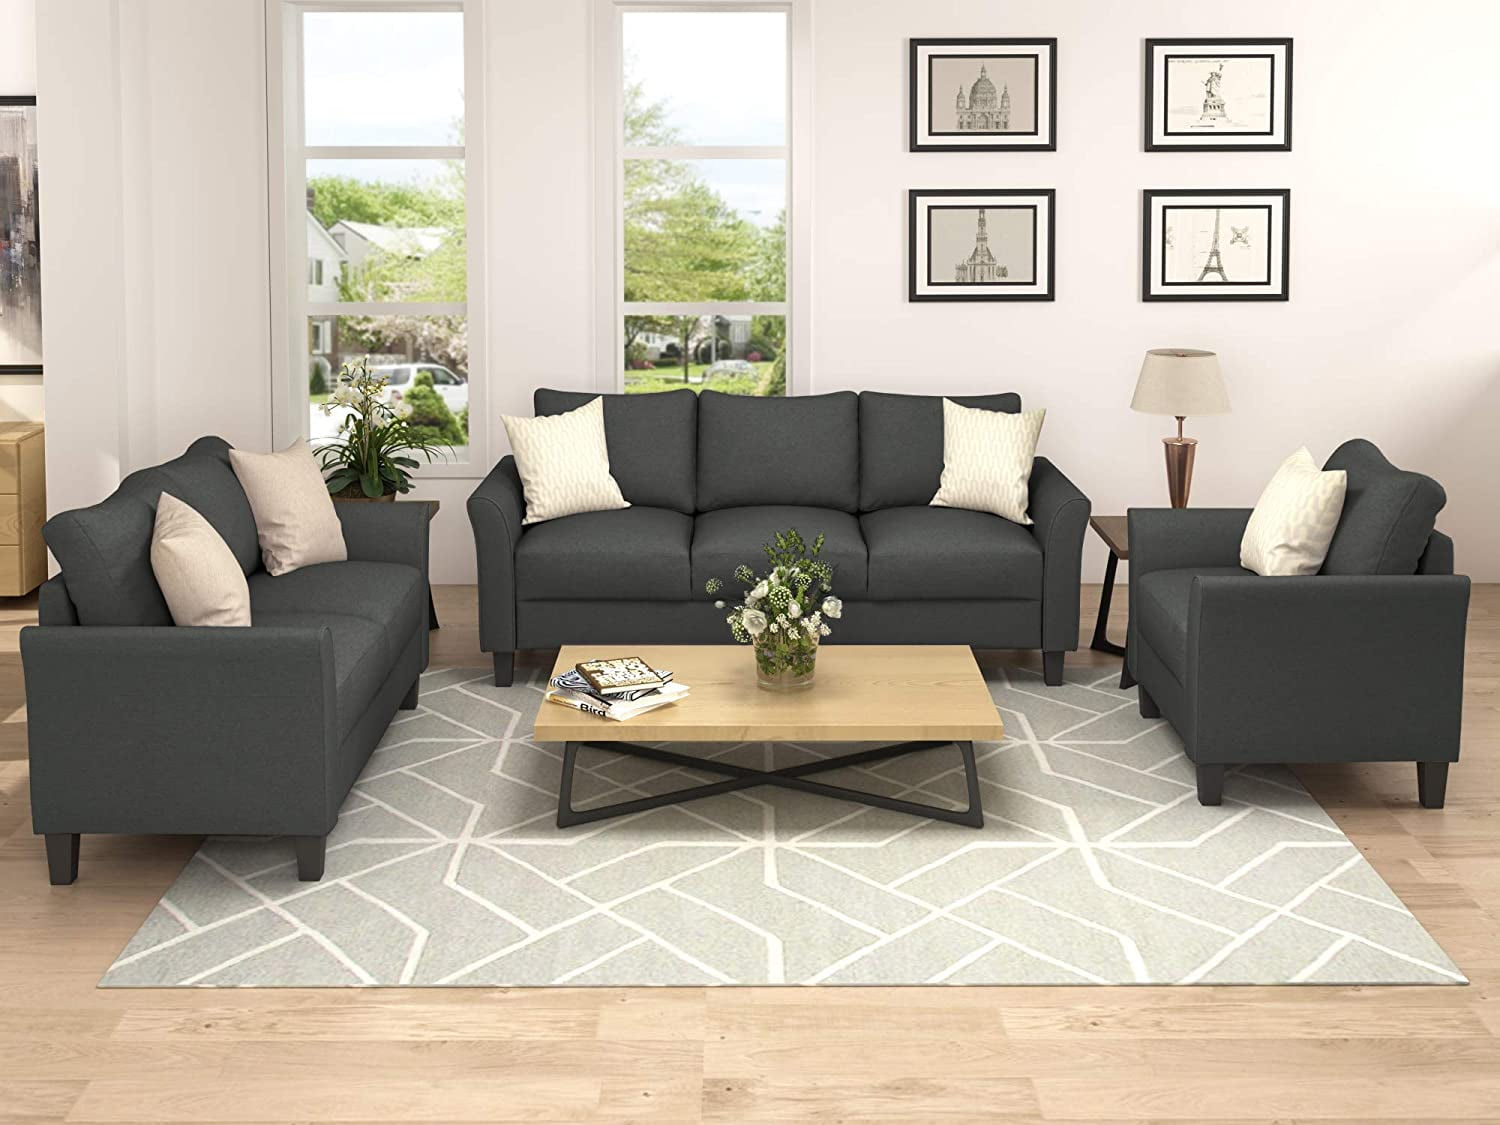 Lemonbest Designs 3 Pieces Living Room Couch Sets